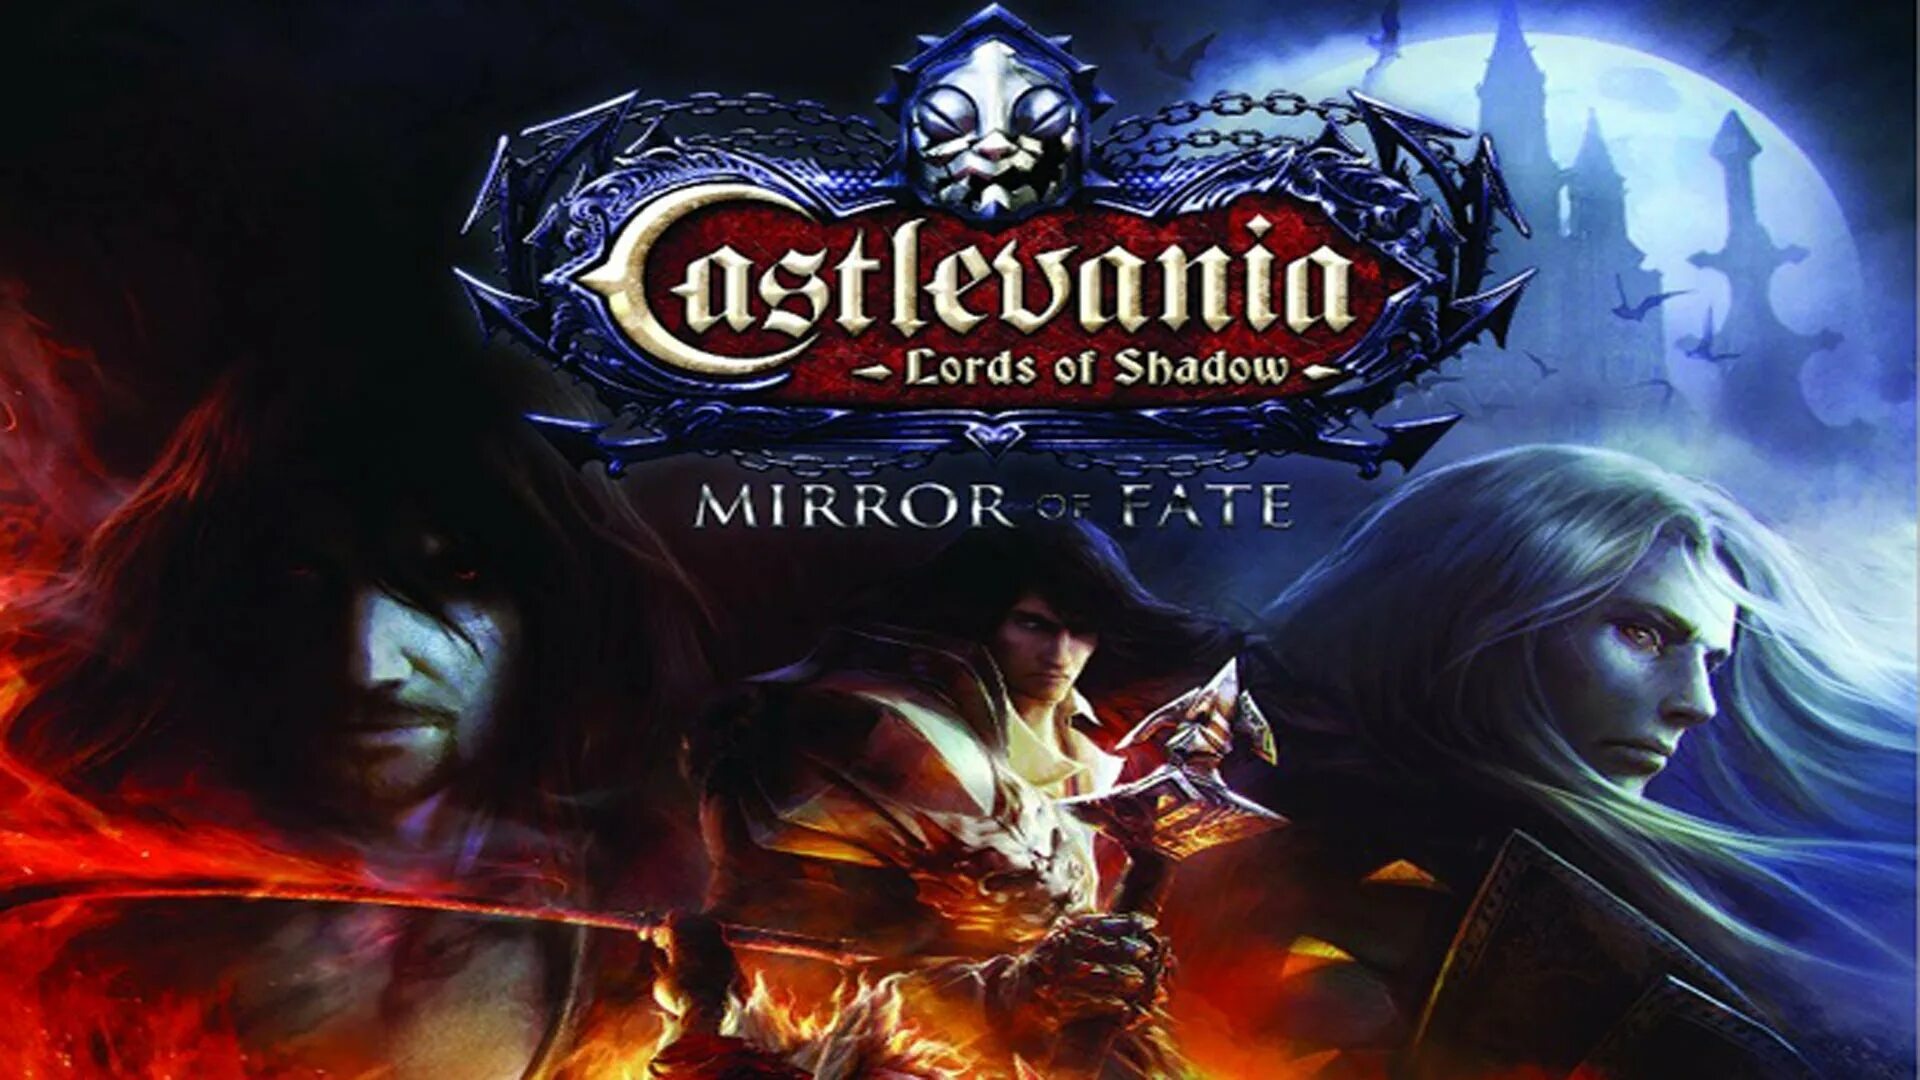 Mirror shadows. Castlevania Lords of Shadow Mirror of Fate Алукард. Castlevania: Lords of Shadow Mirror of Fate HD обложка. Castlevania Lords of Shadow Mirror of Fate Xbox 360 обложка. Mirror of Fate и Lords of Shadow 2..